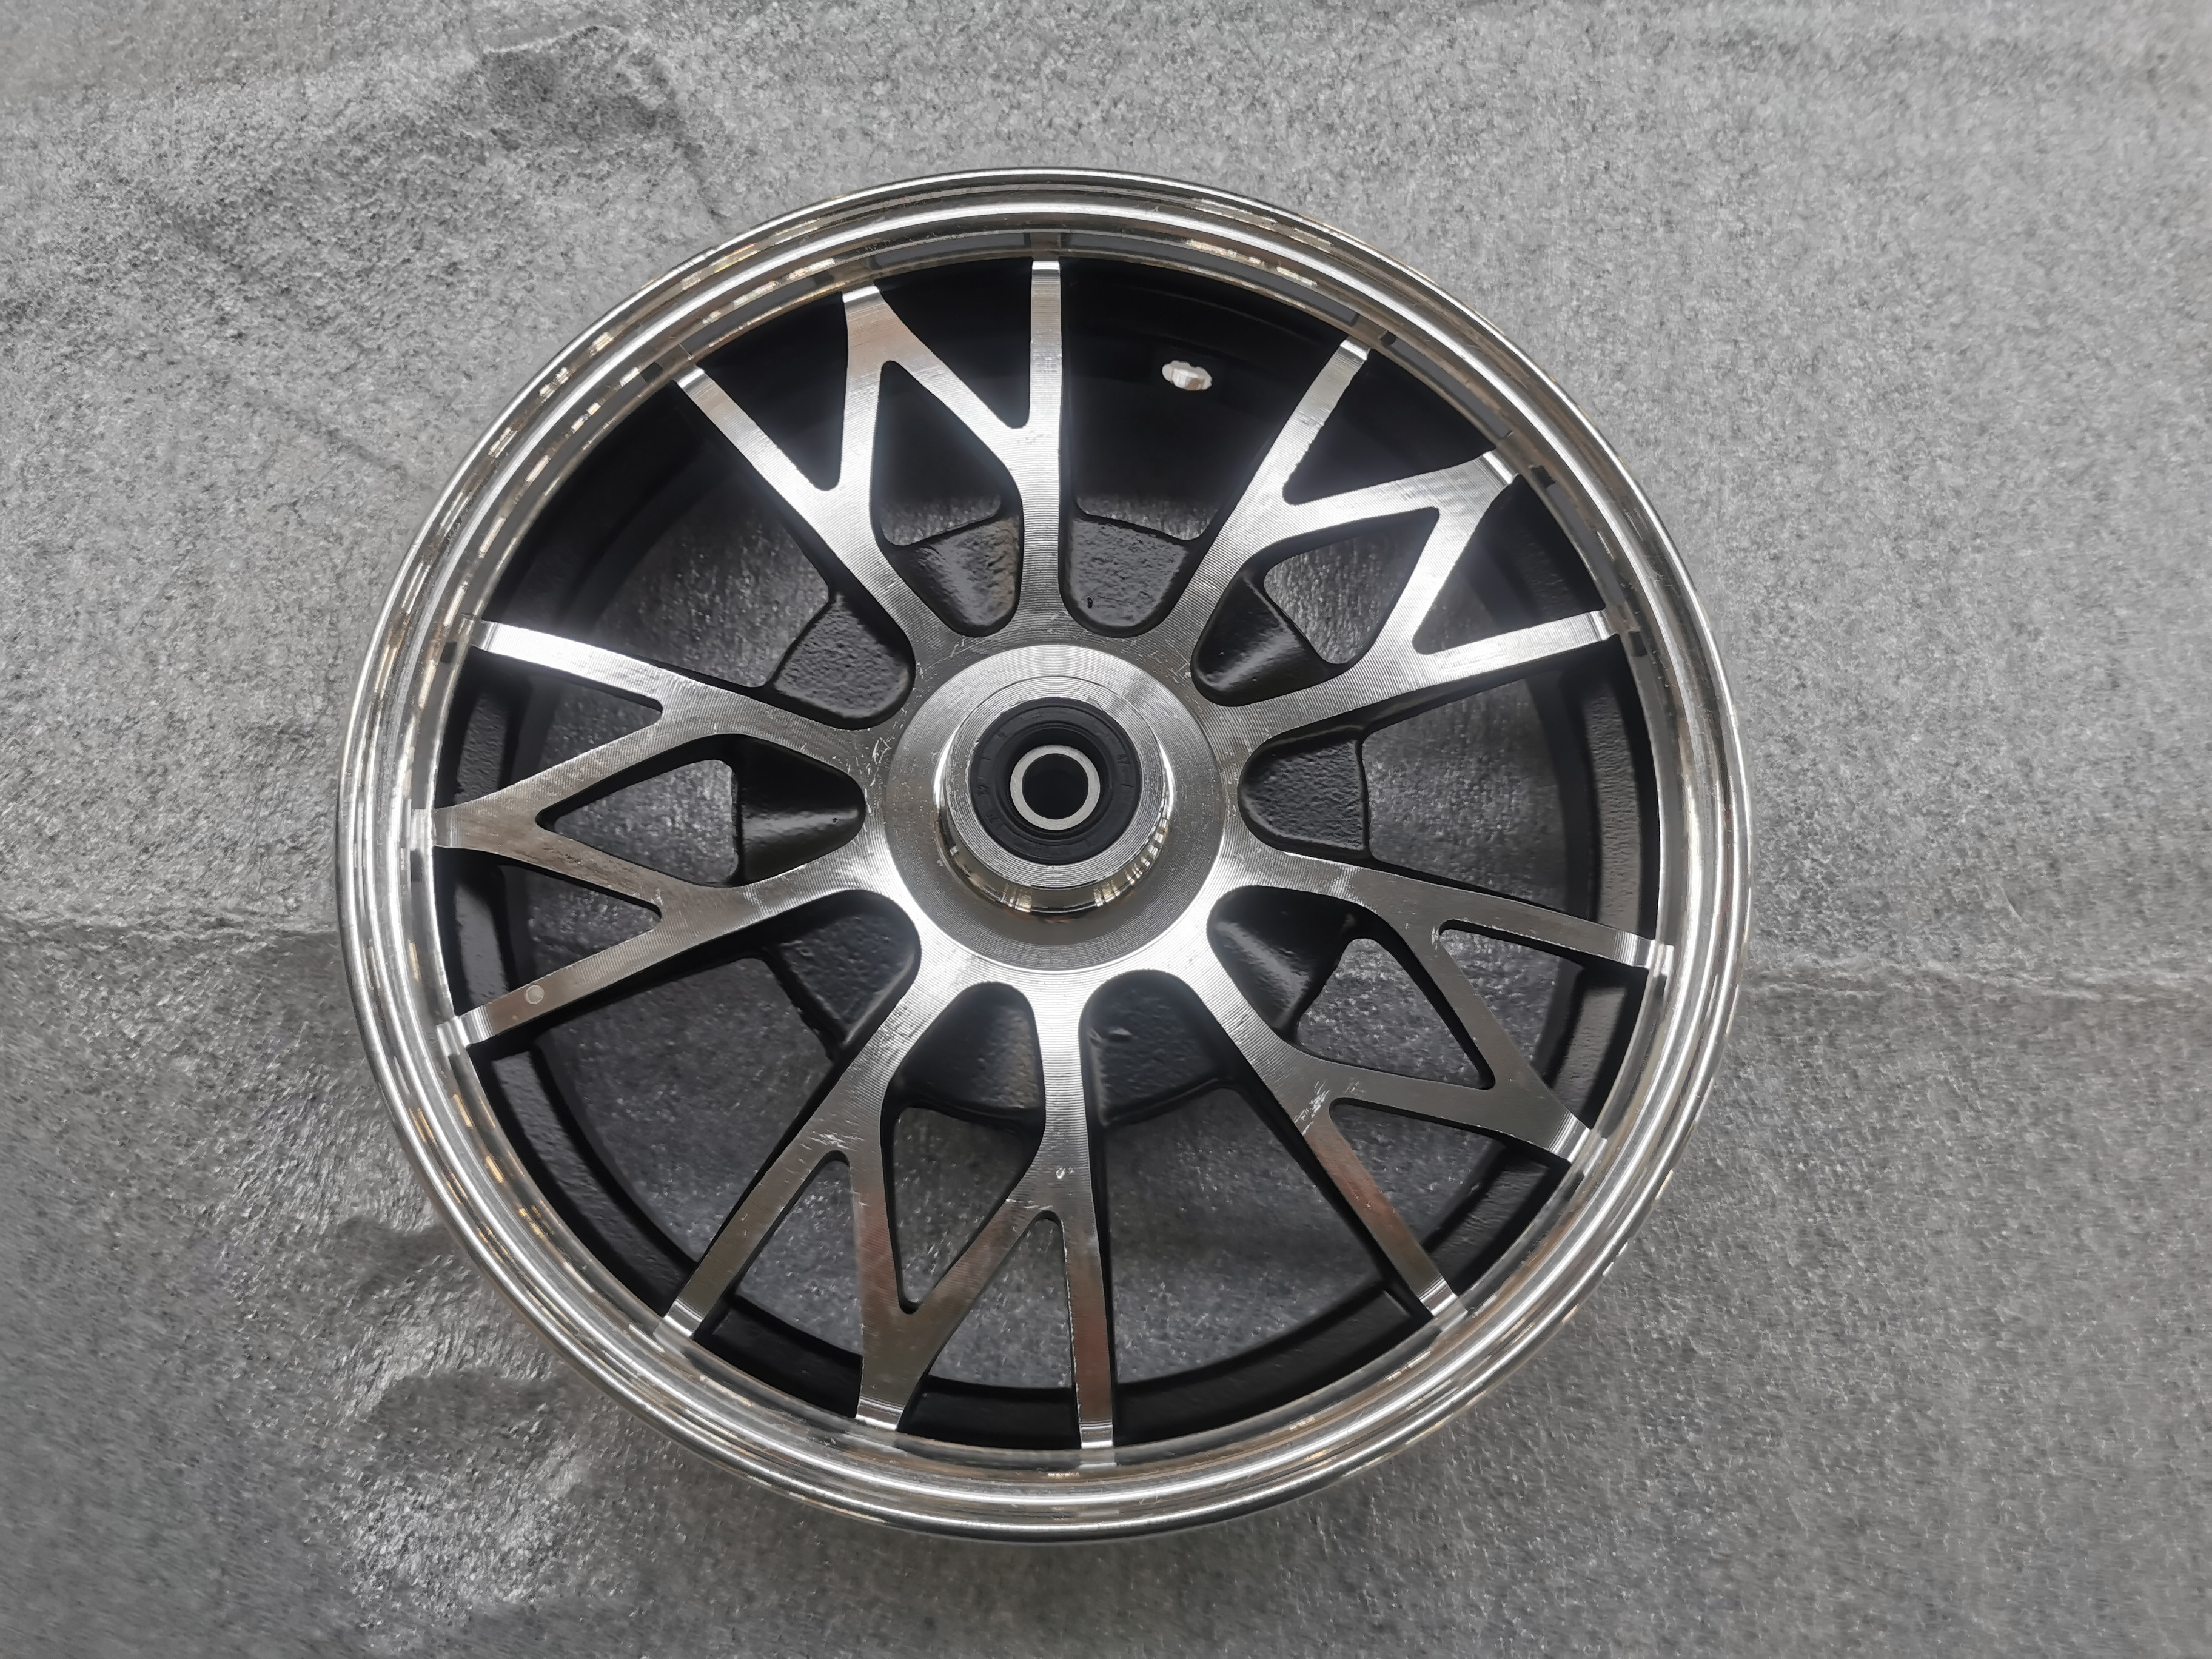 Aluminum wheel For BN-DL